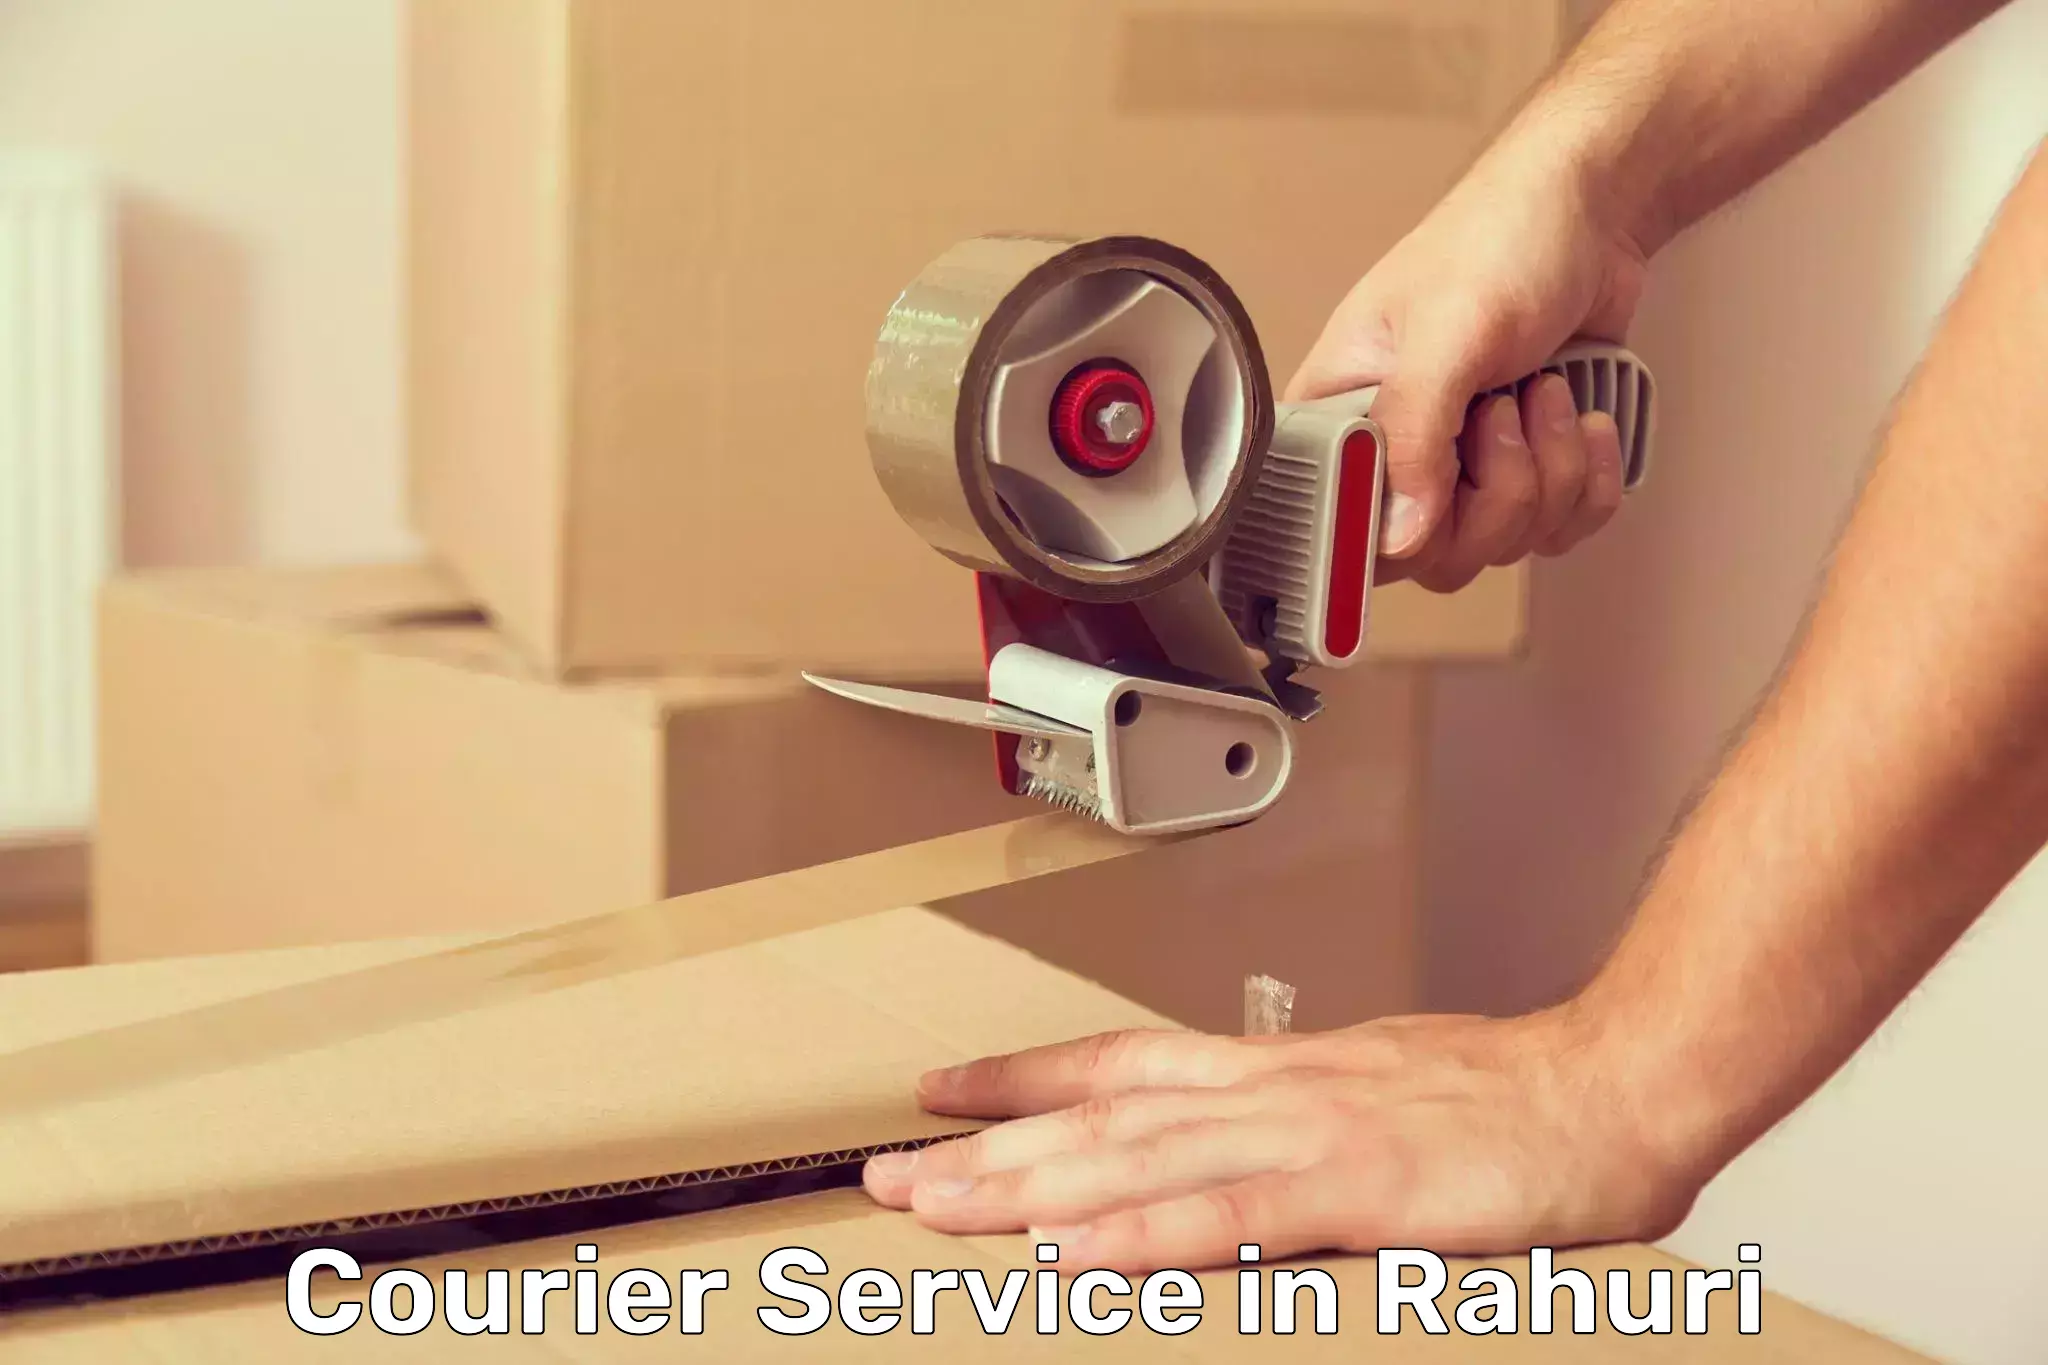 Secure packaging in Rahuri